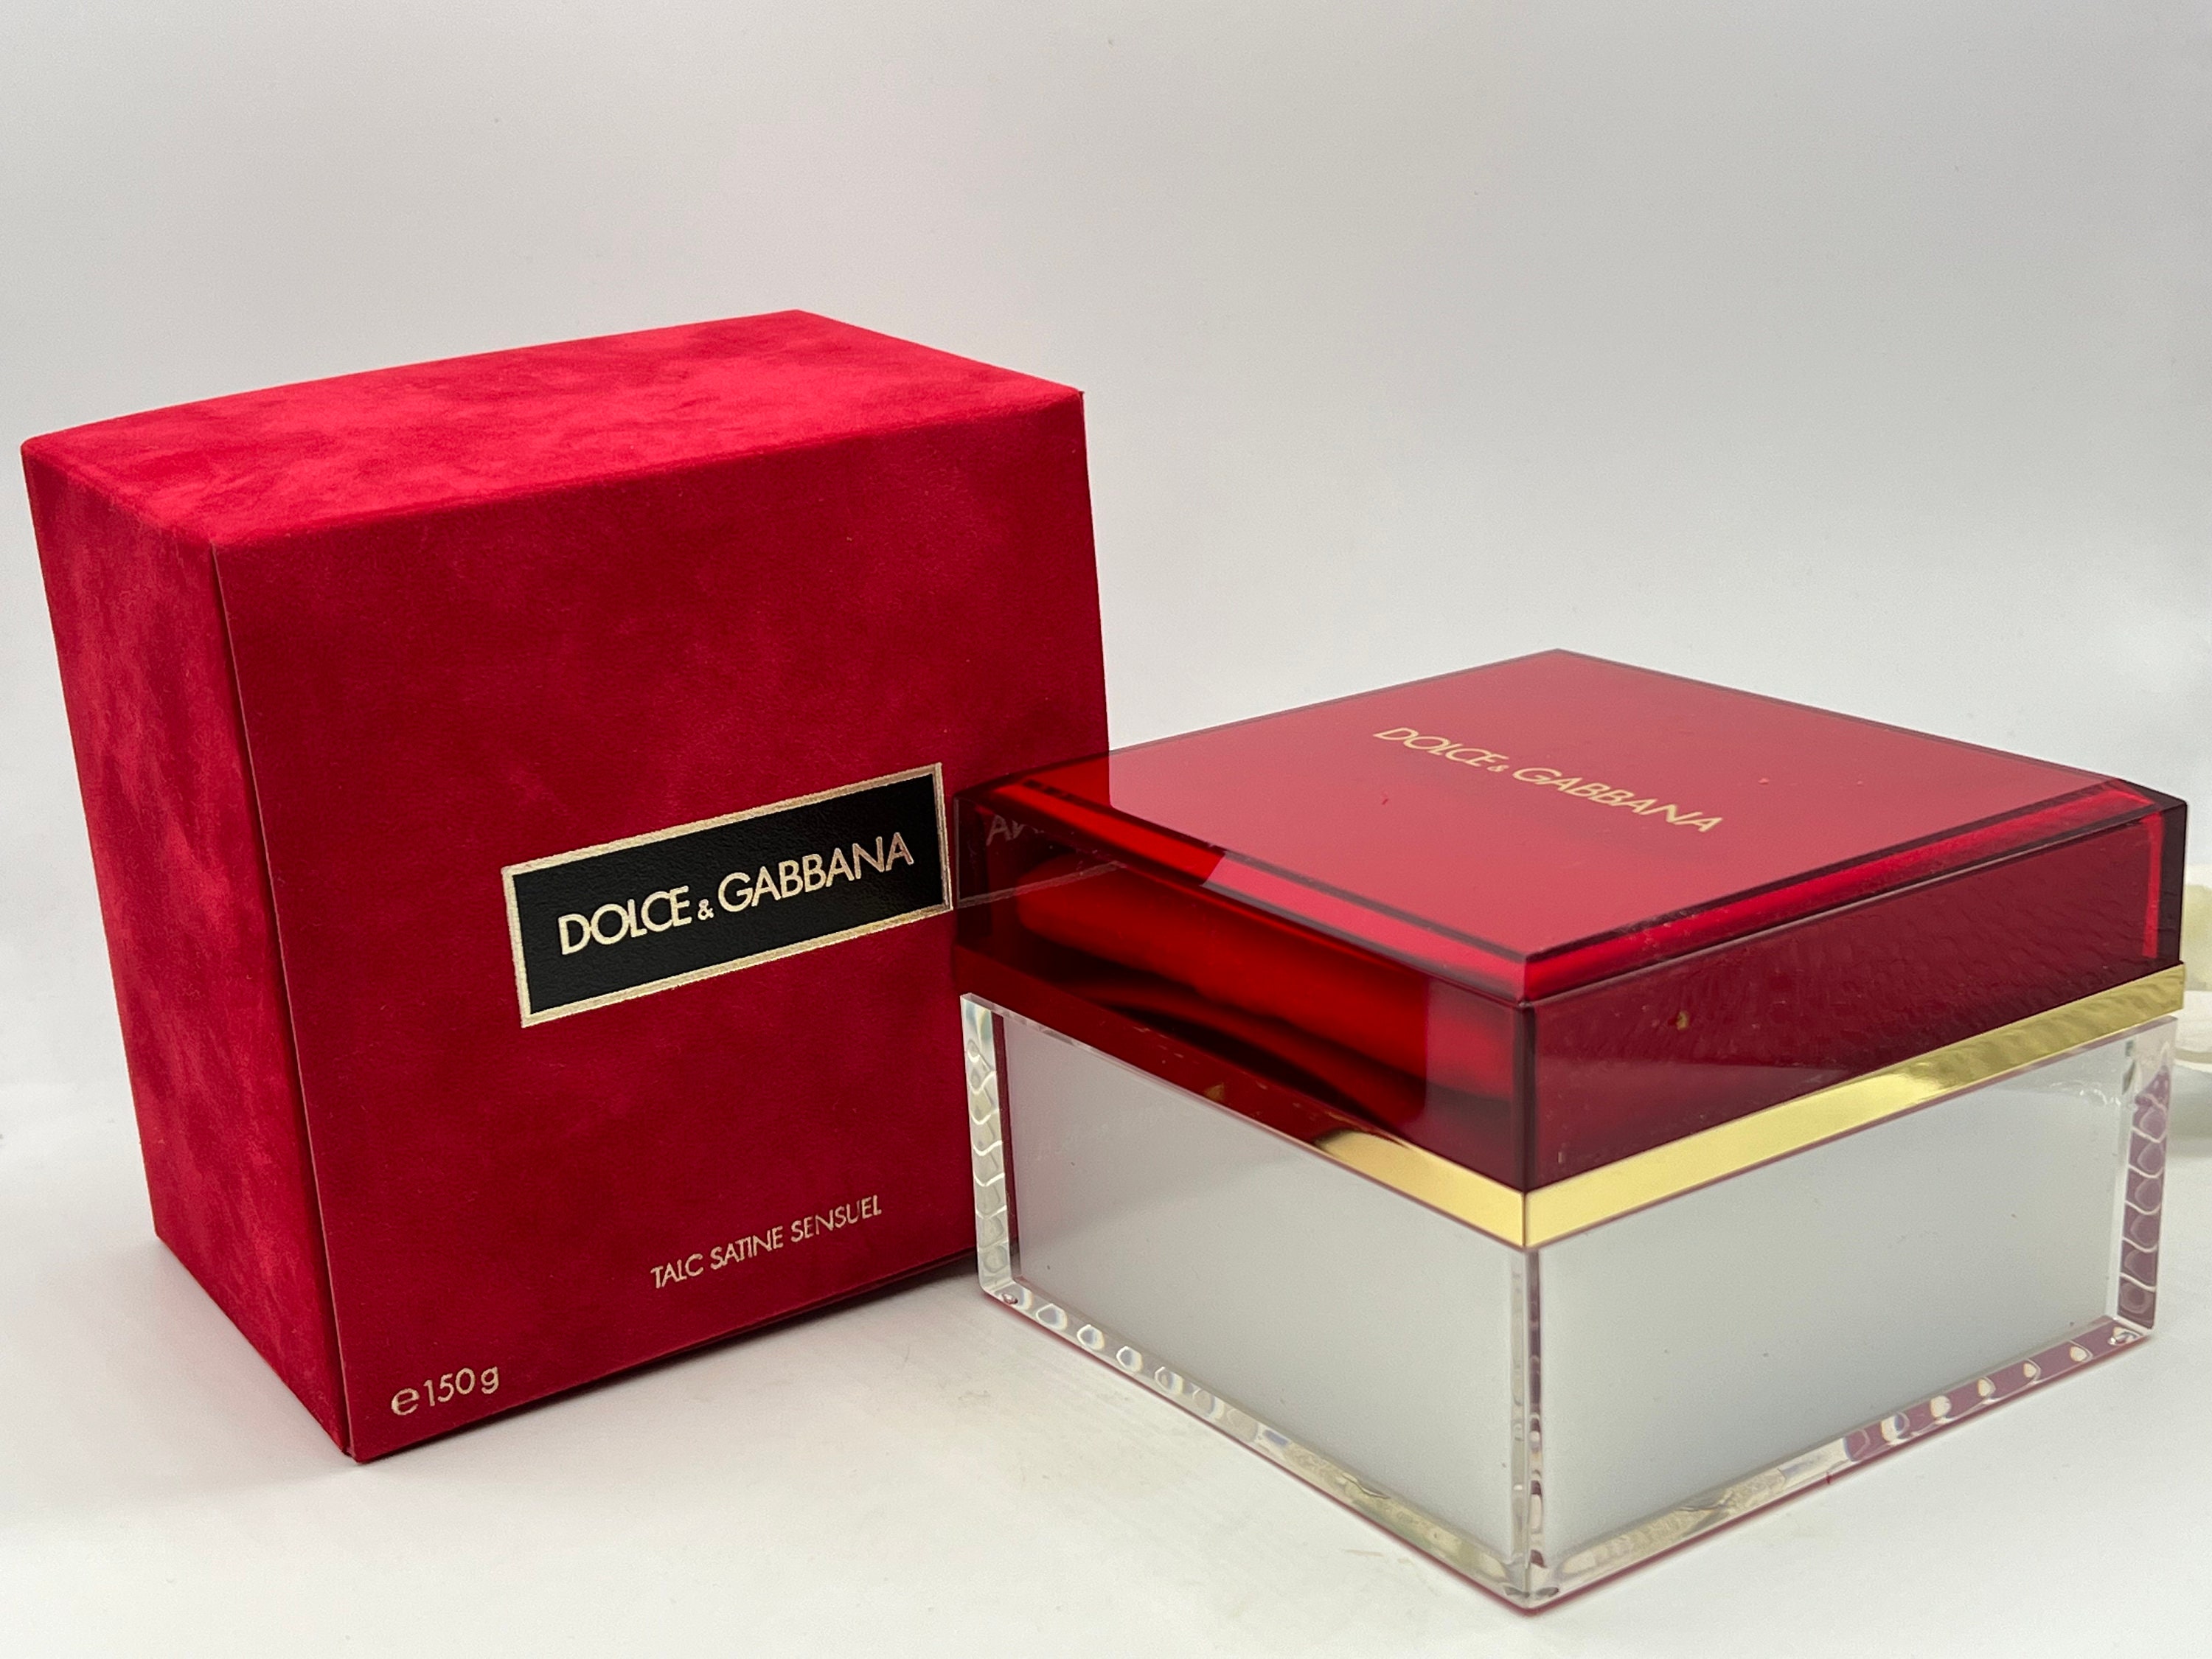 Dolce Gabbana Talc Satine Sensuel 150g/5 Fl.oz Body Powder - Etsy